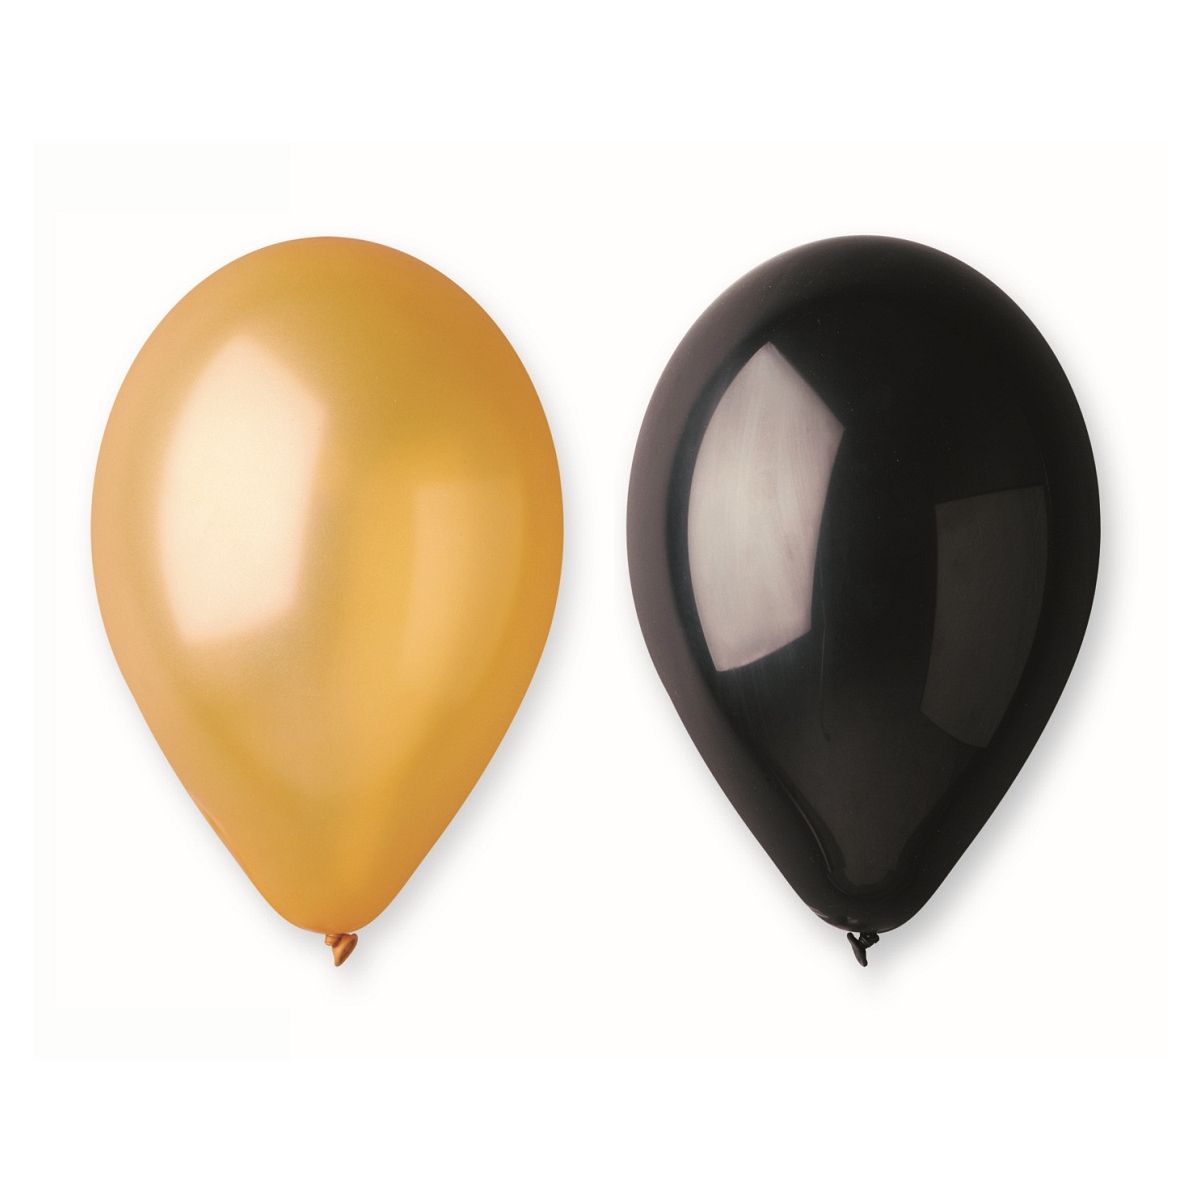 Balon gumowy Godan Beauty&Charm 3 złote, 2 czarne 5szt. 300mm 12cal (CB-3Z2C)